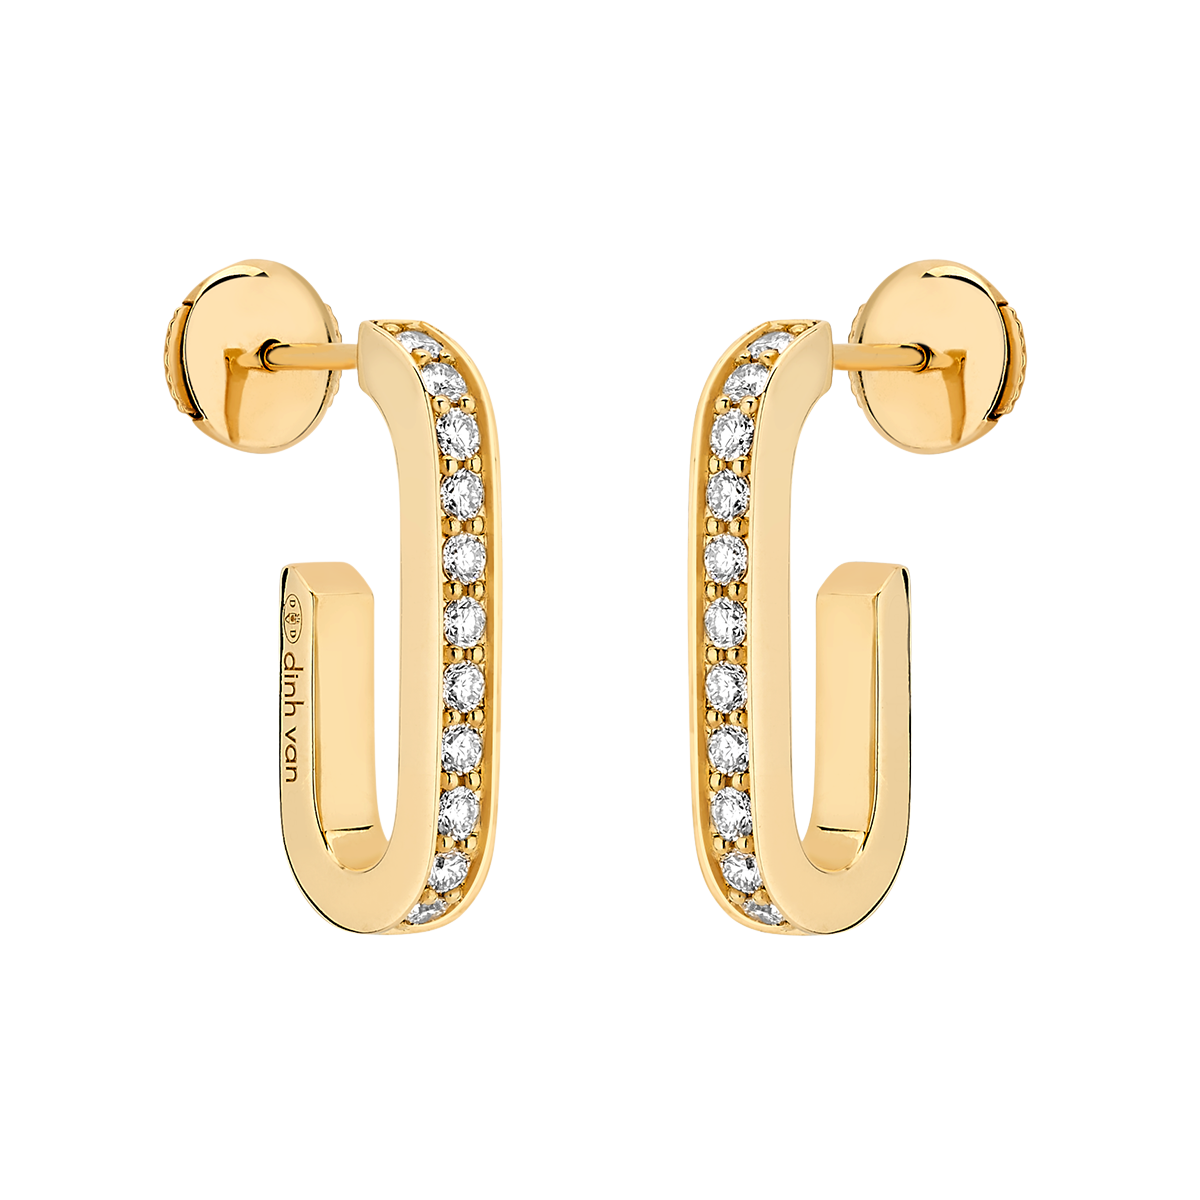 Boucles d'oreilles Maillon L or jaune et diamants Menottes dinh van Référence :  860111 -1